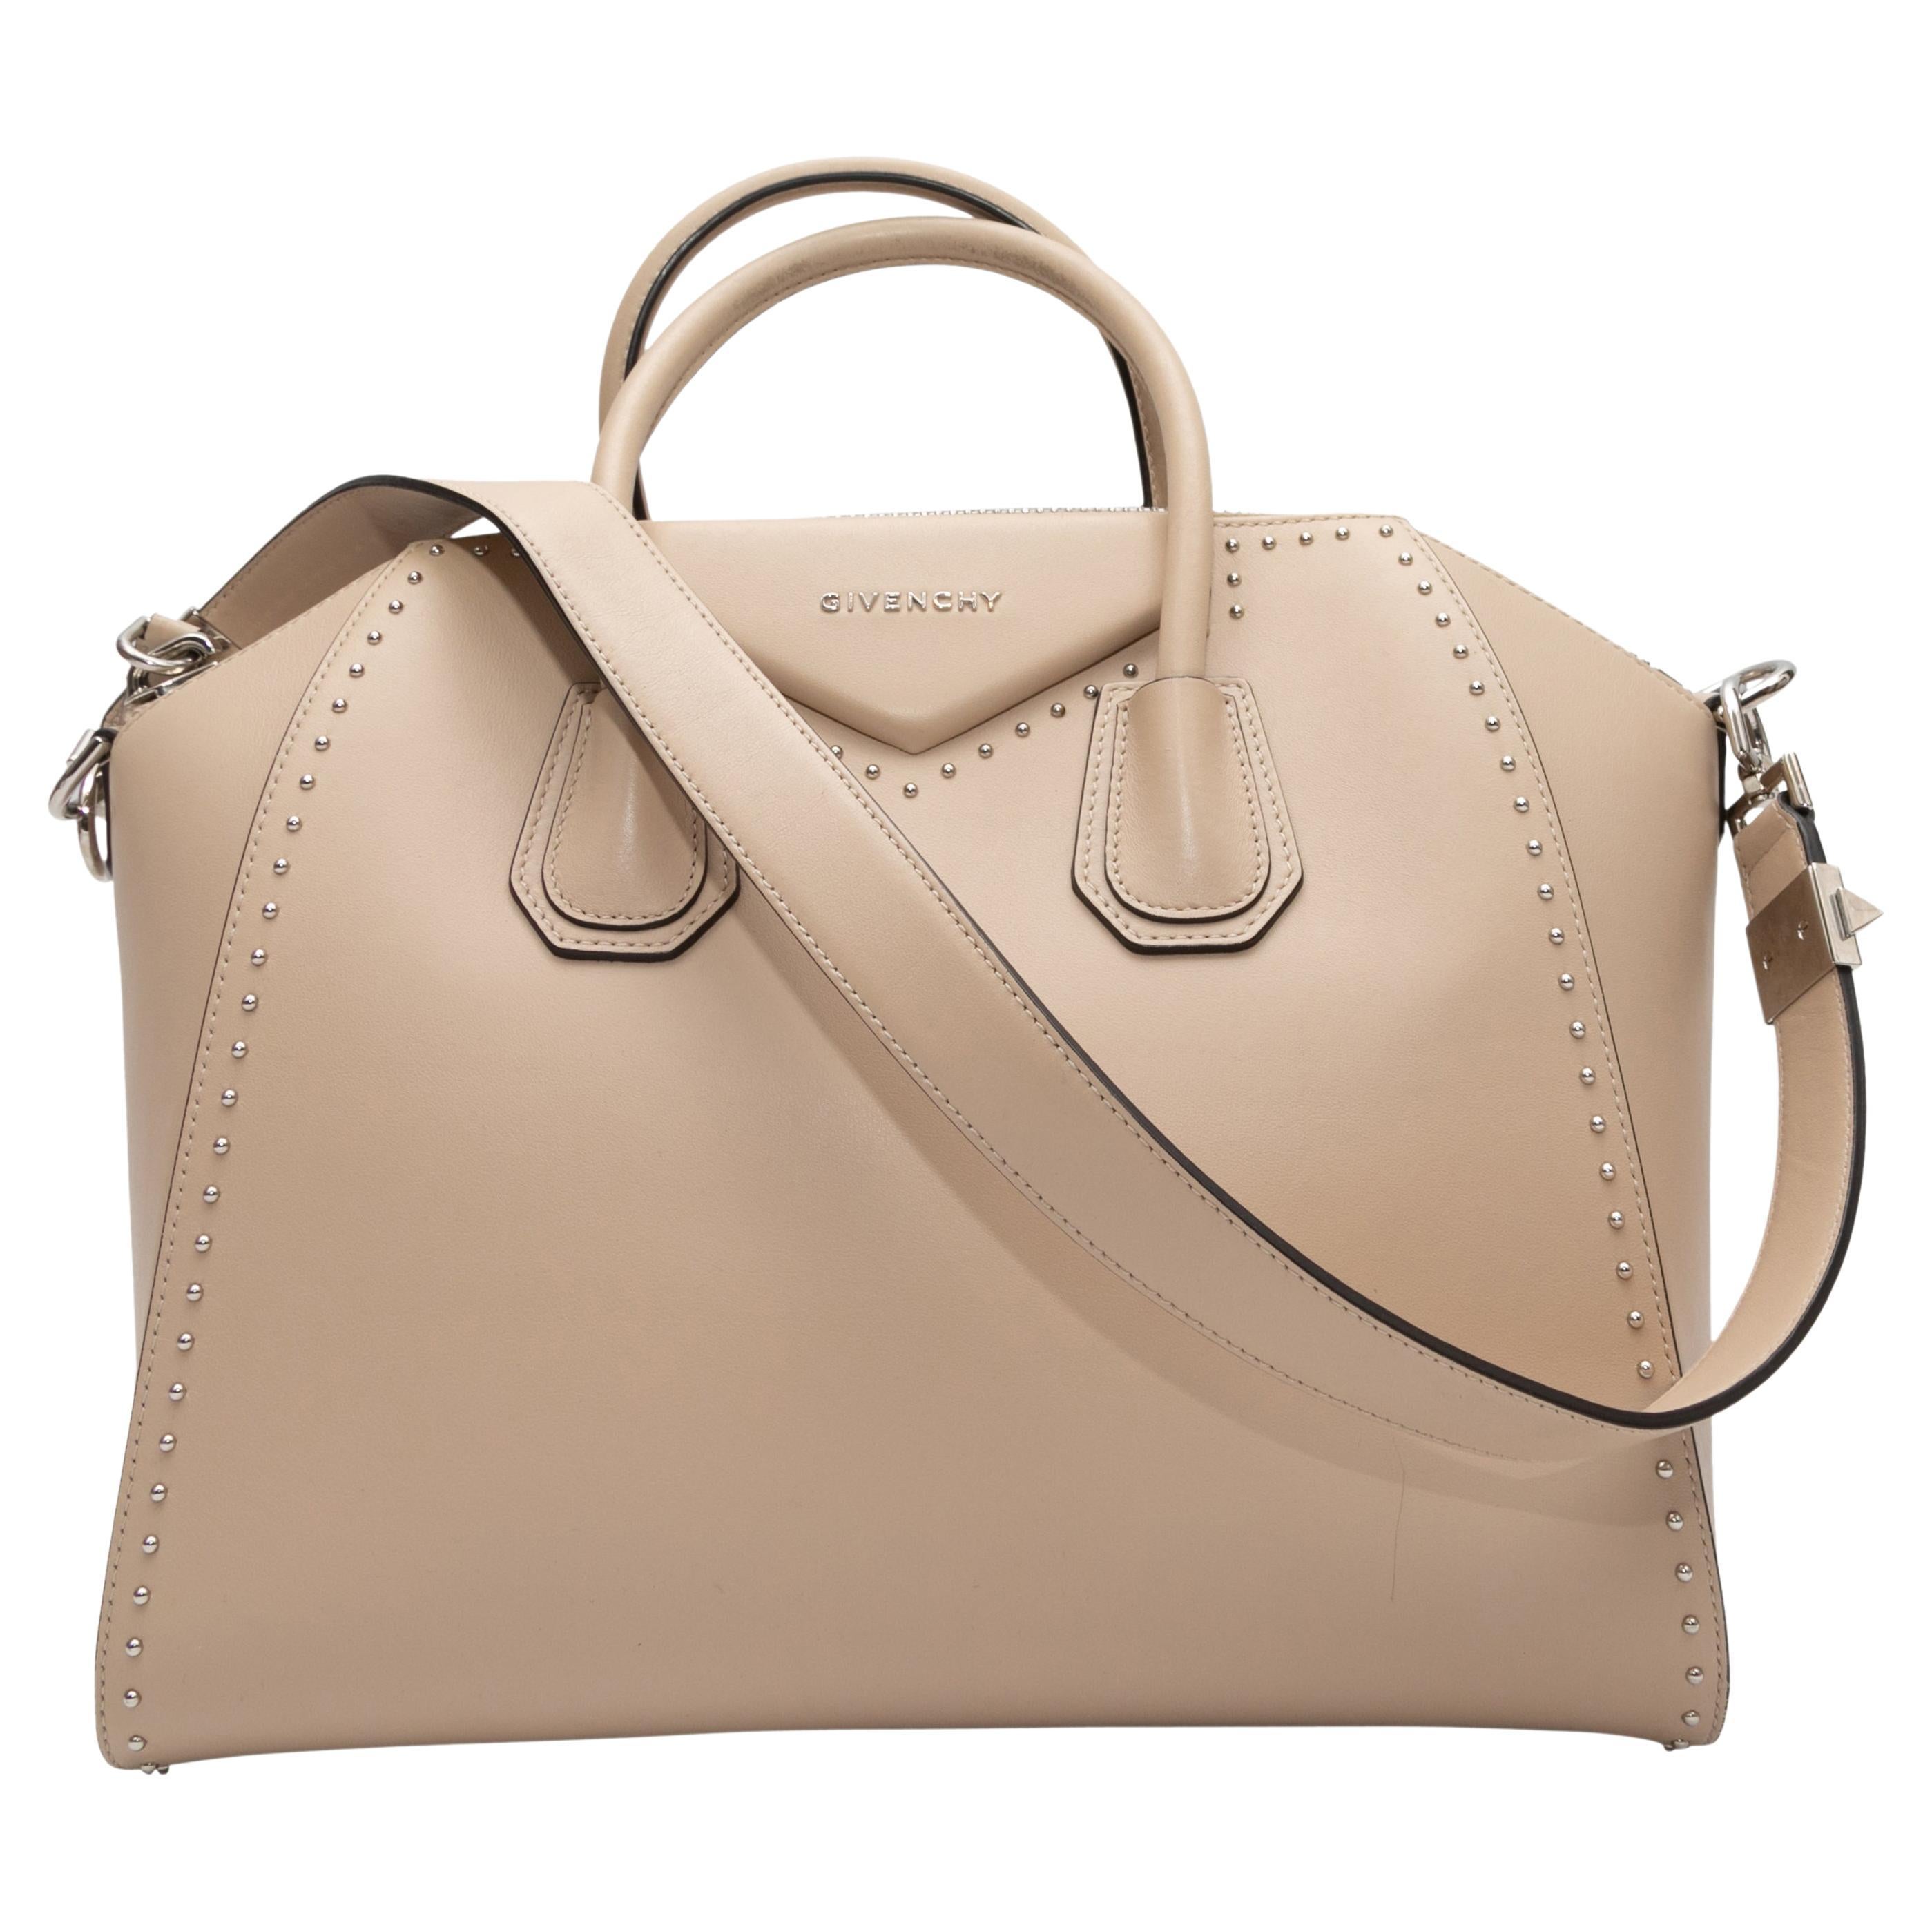 Givenchy grand sac à main Antigona beige